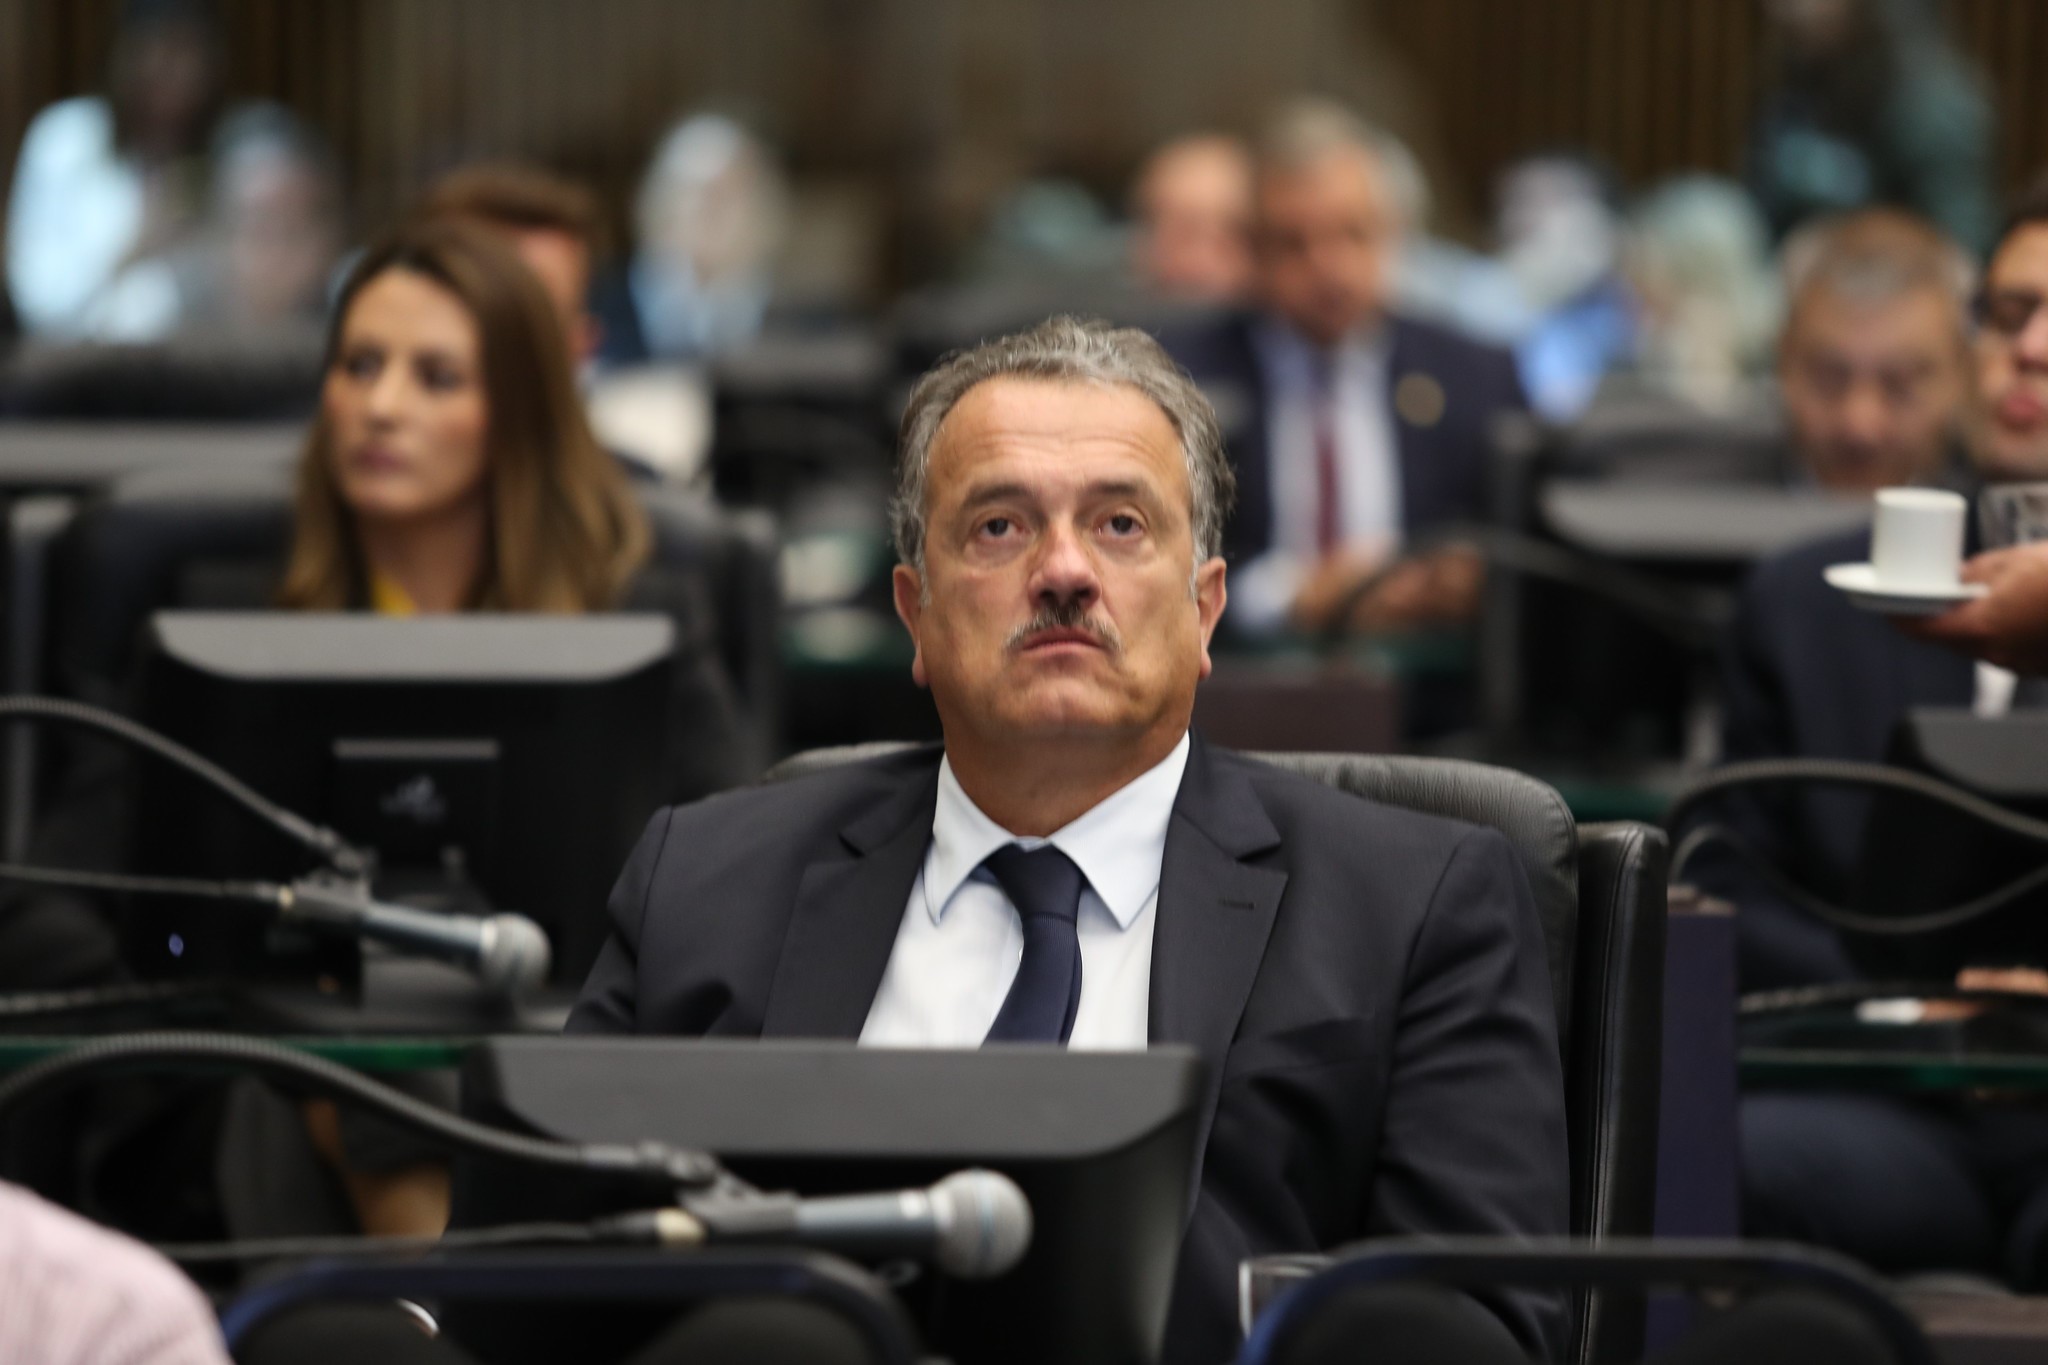 Plauto de novo visual O deputado Plauto Guimarães (DEM) voltou aos trabalhos das sessões legislativas com um novo visual. Agora ostenta um bigode.